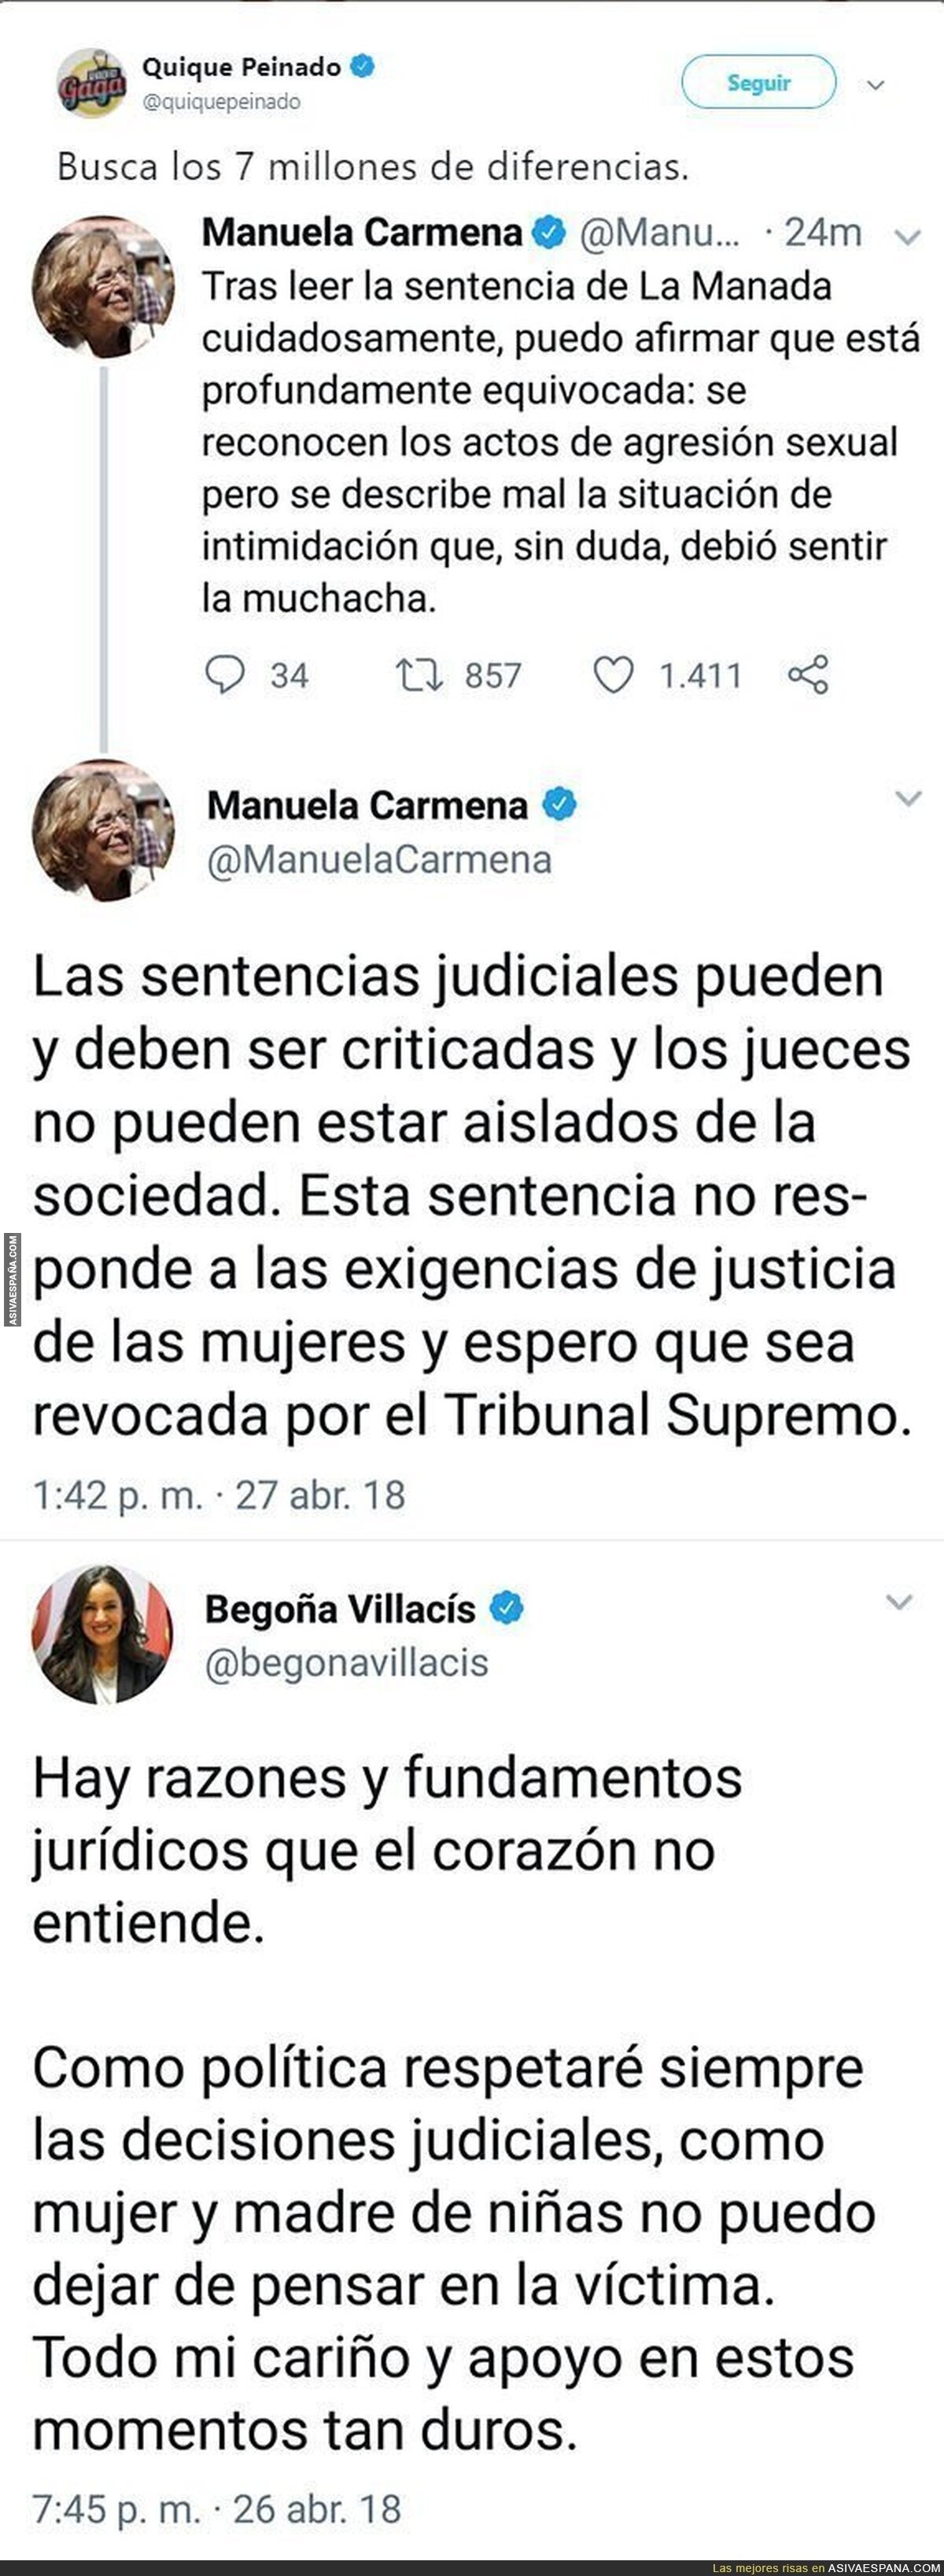 La gran diferencia de mensaje entre Manuela Carmena y Begoña Villacís tras salir la sentencia de La Manada